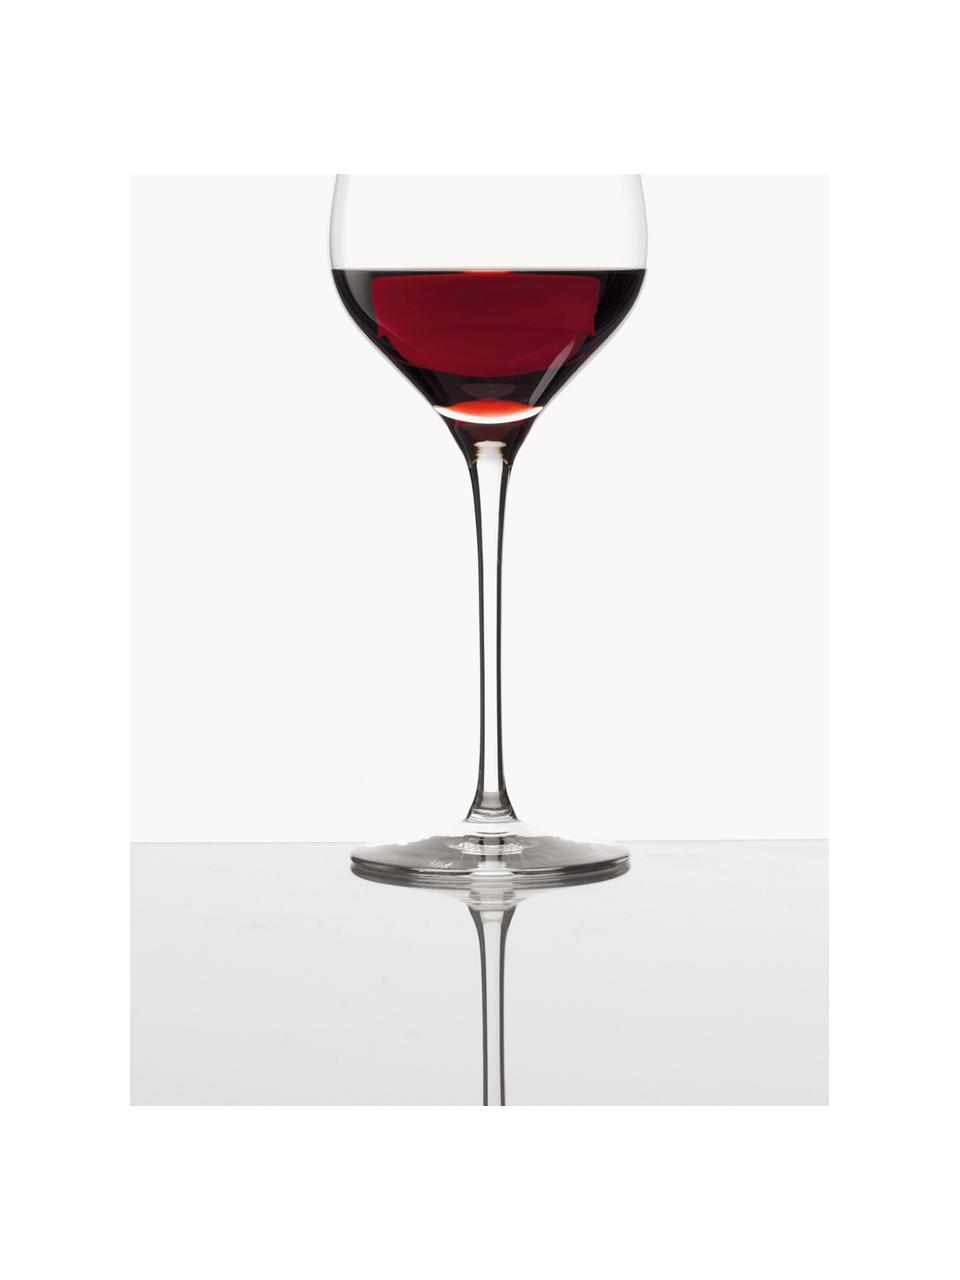 Kieliszek do czerwonego wina ze szkła kryształowego Exquisit, 6 szt., Szkło kryształowe, Transparentny, Ø 7 x W 24 cm, 480 ml